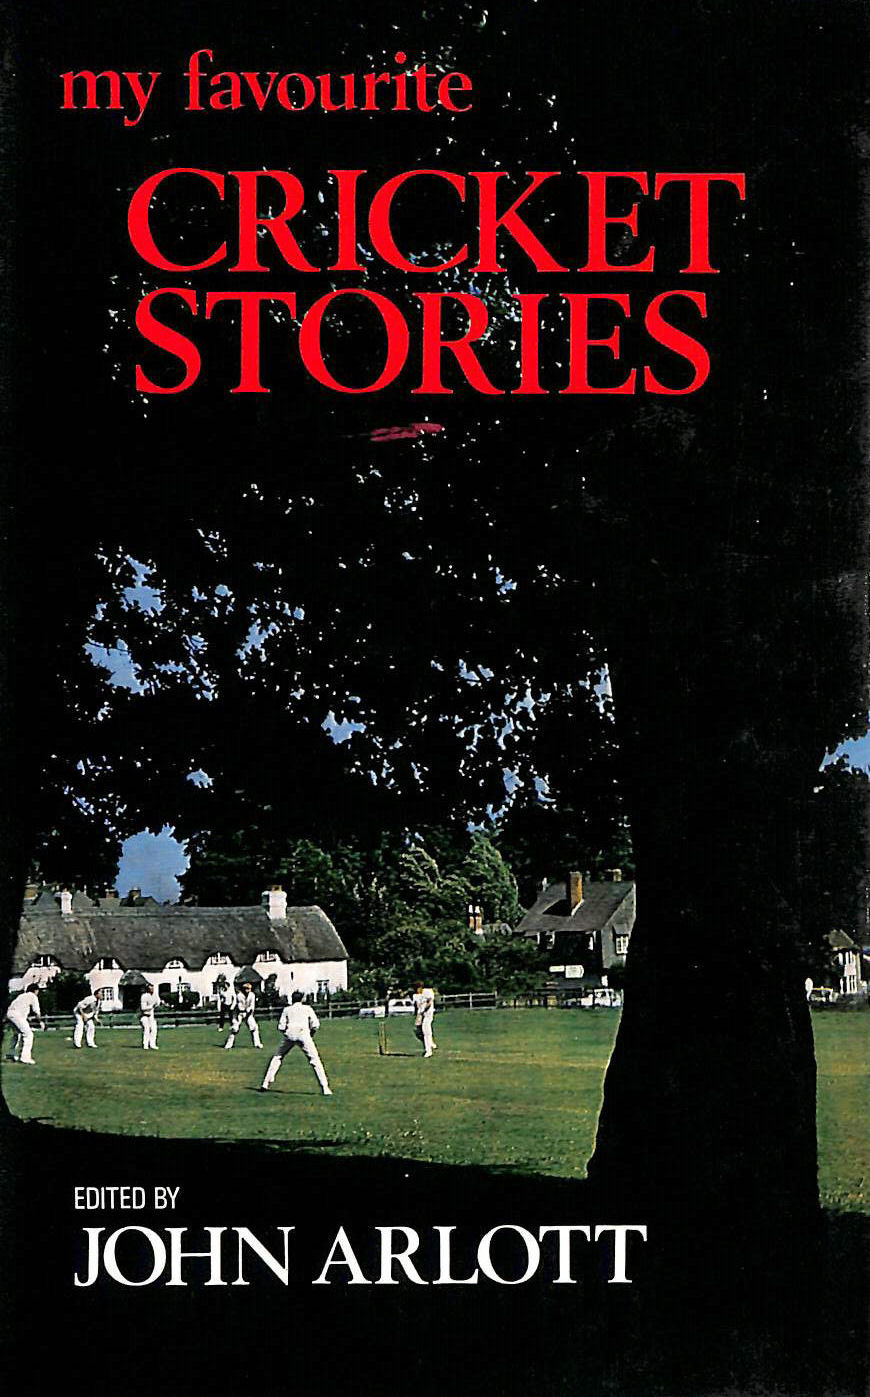 ARLOTT, JOHN [EDITOR] - My Favourite Cricket Stories